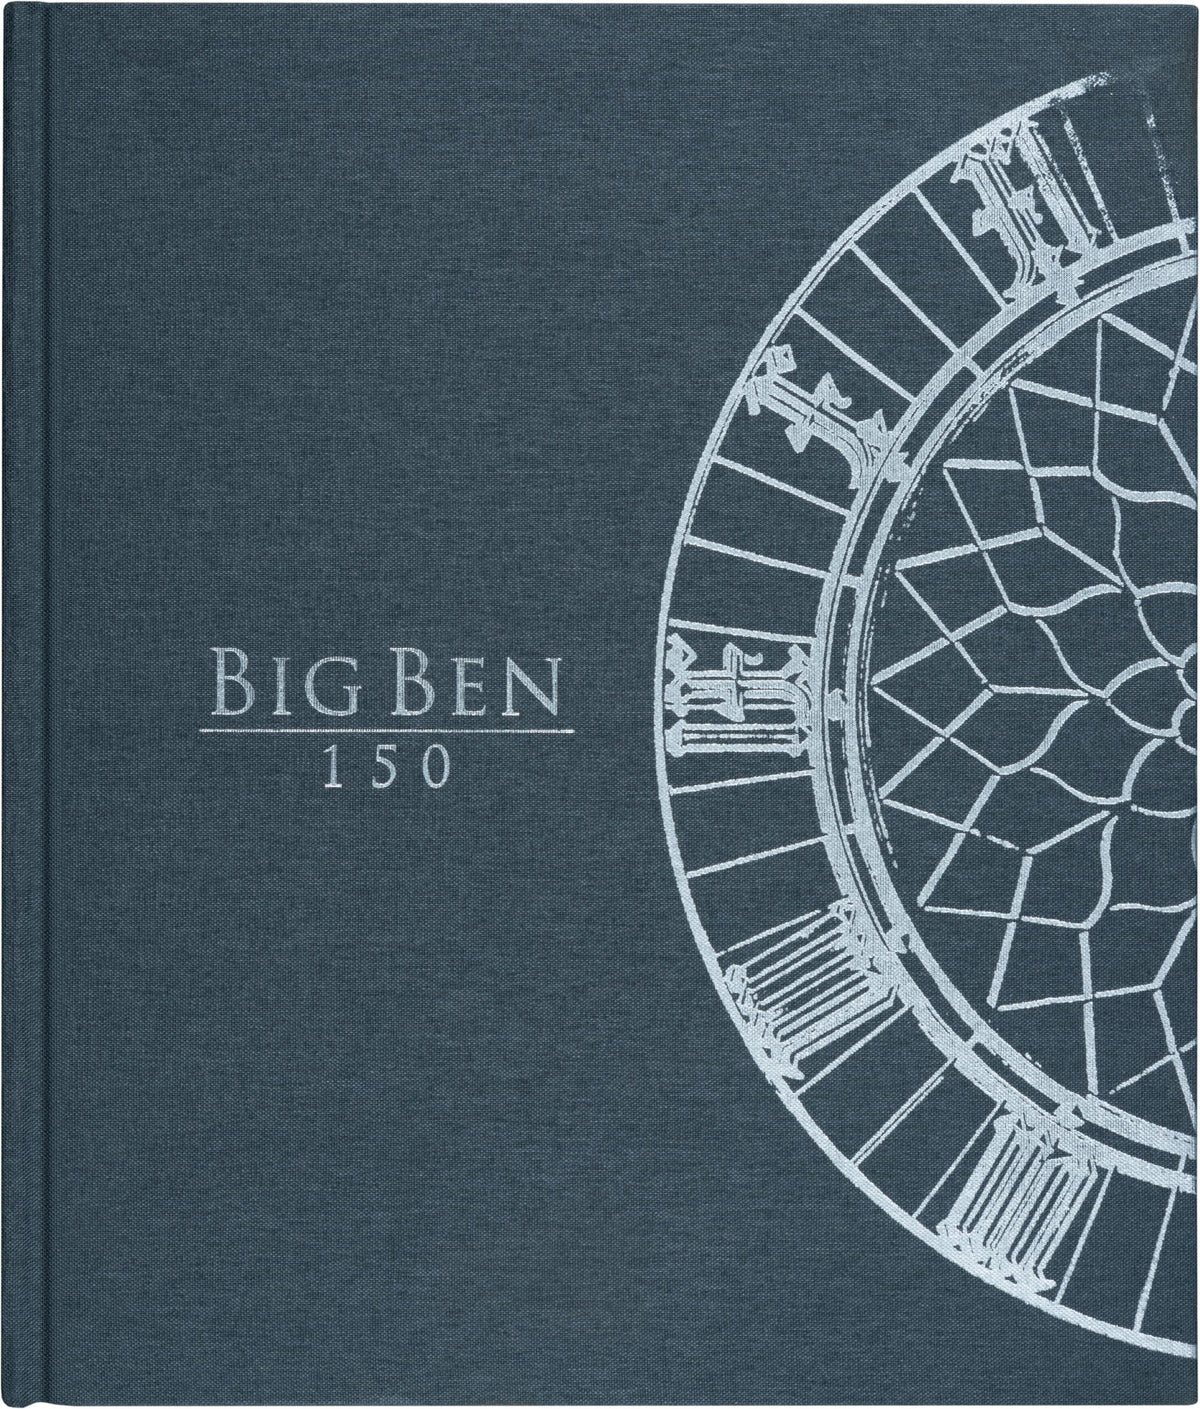 Big Ben 150